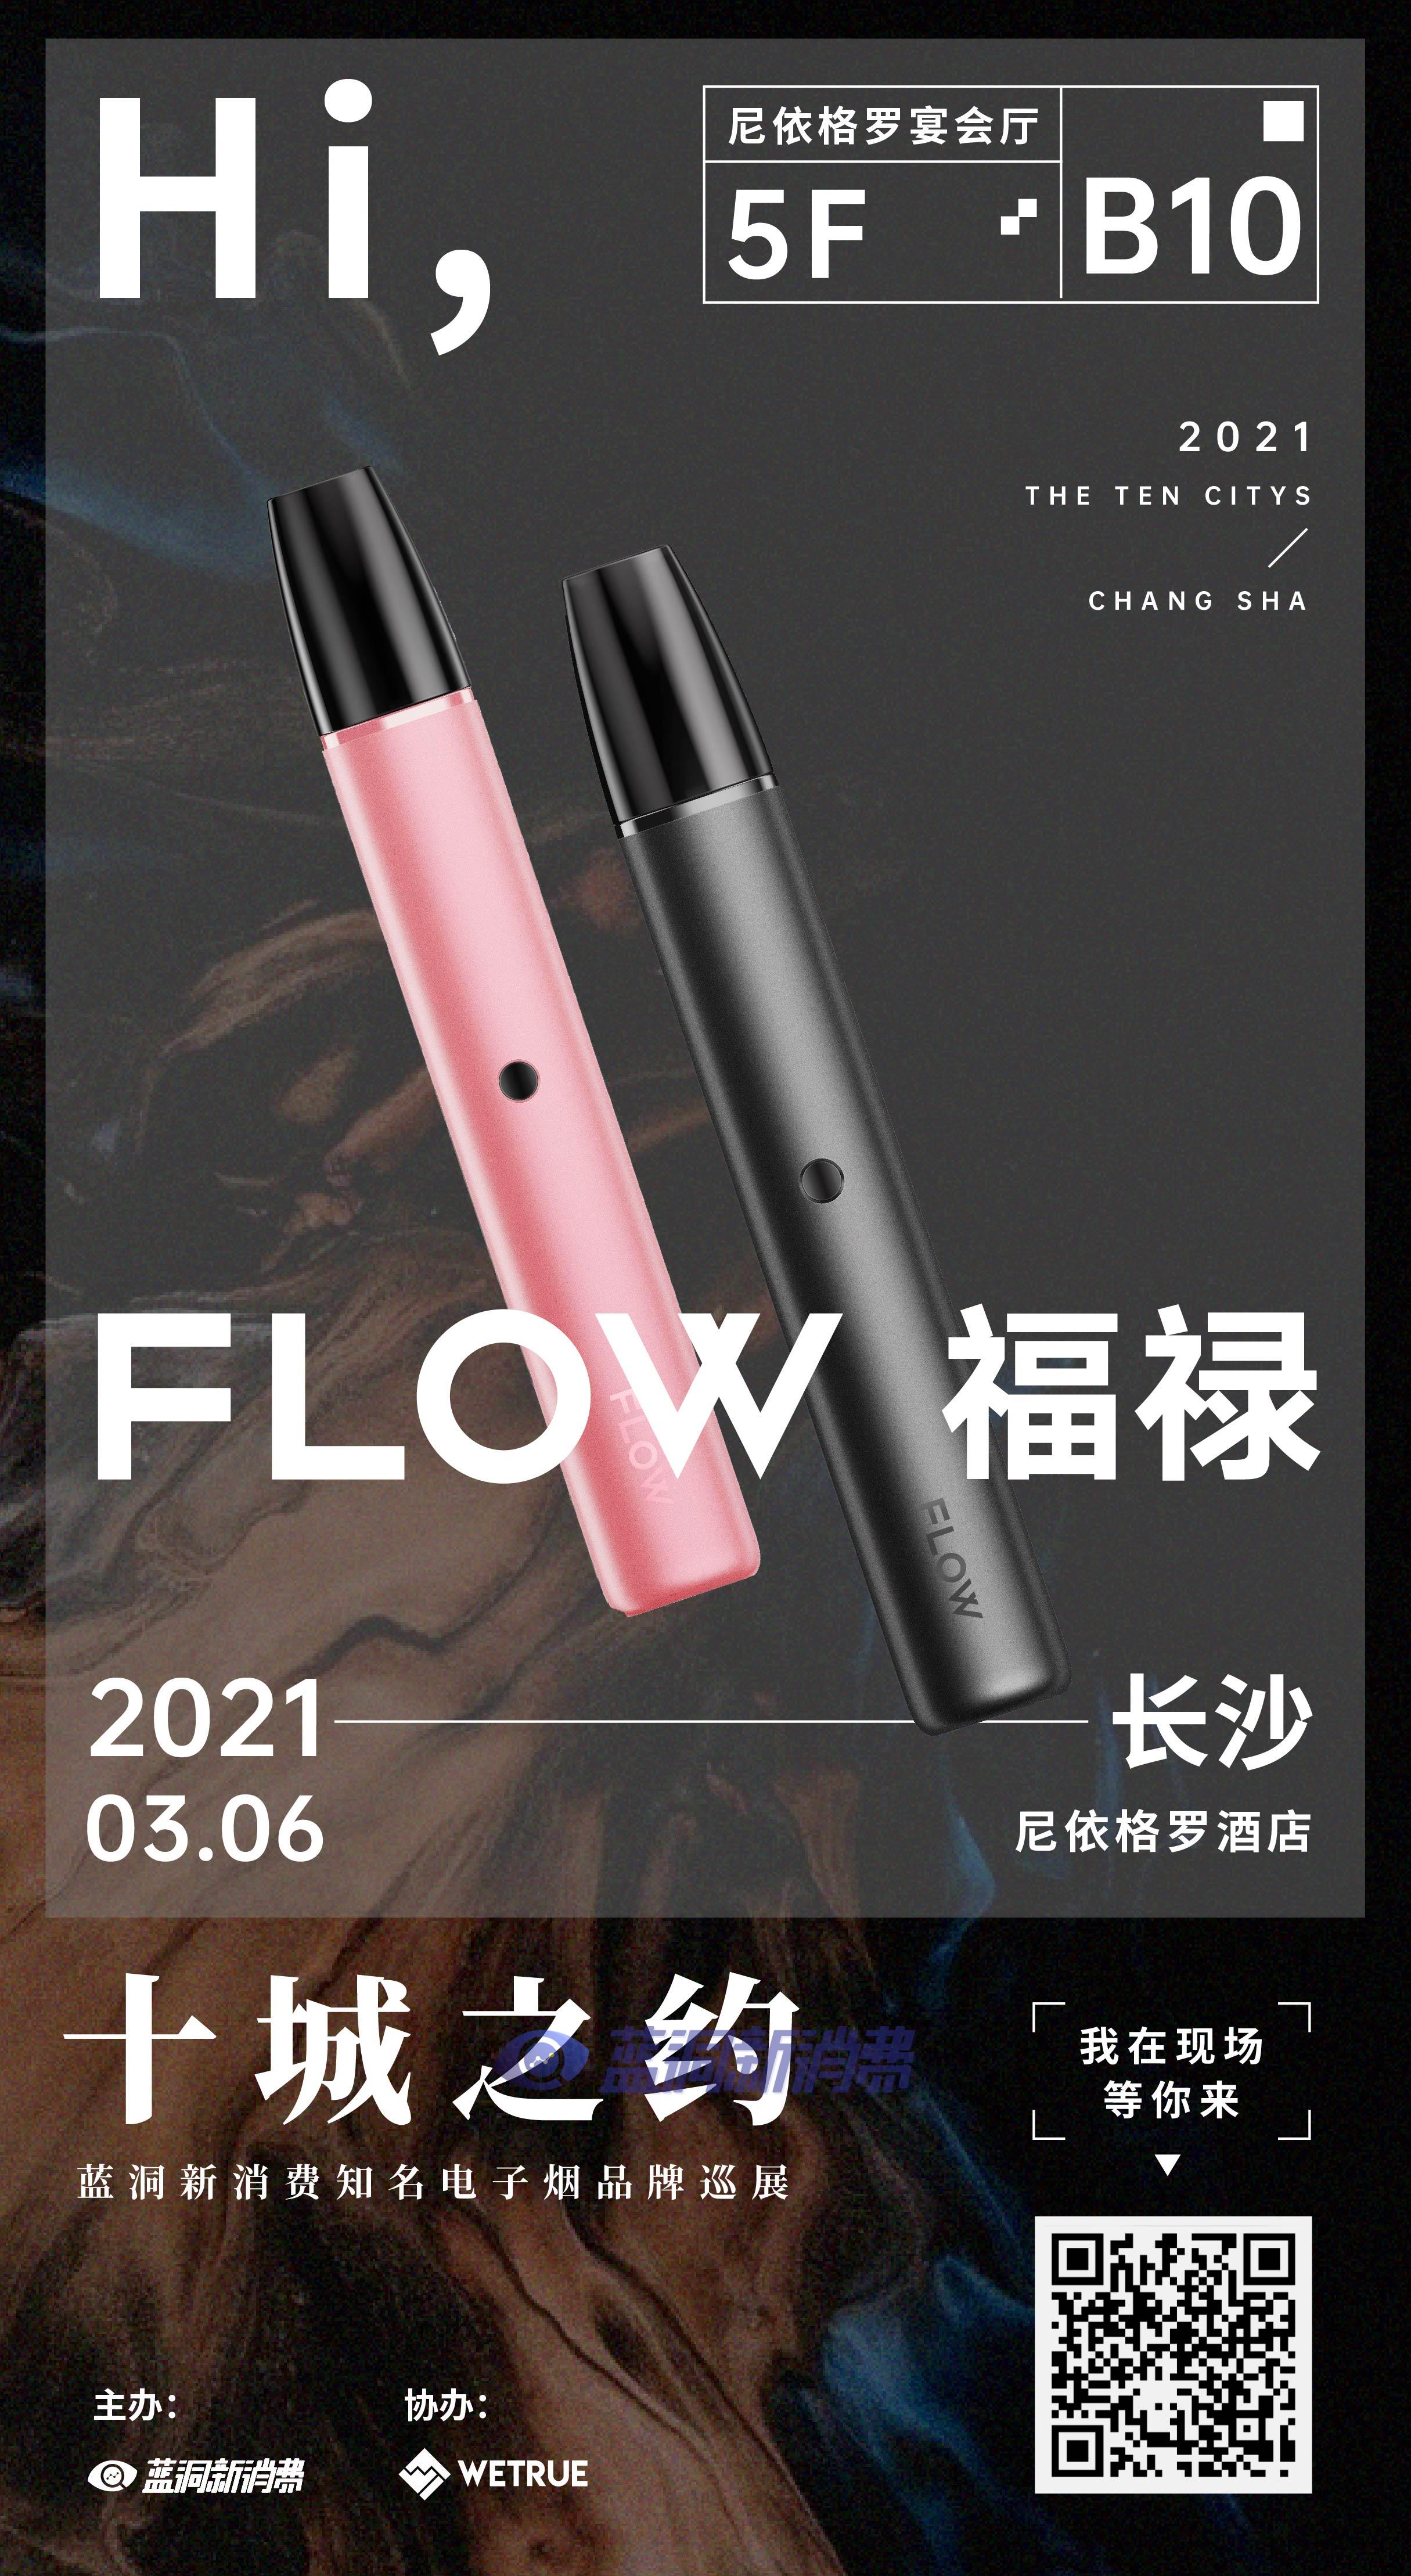 蓝洞电子烟巡展之长沙站品牌巡礼:flow福禄电子烟